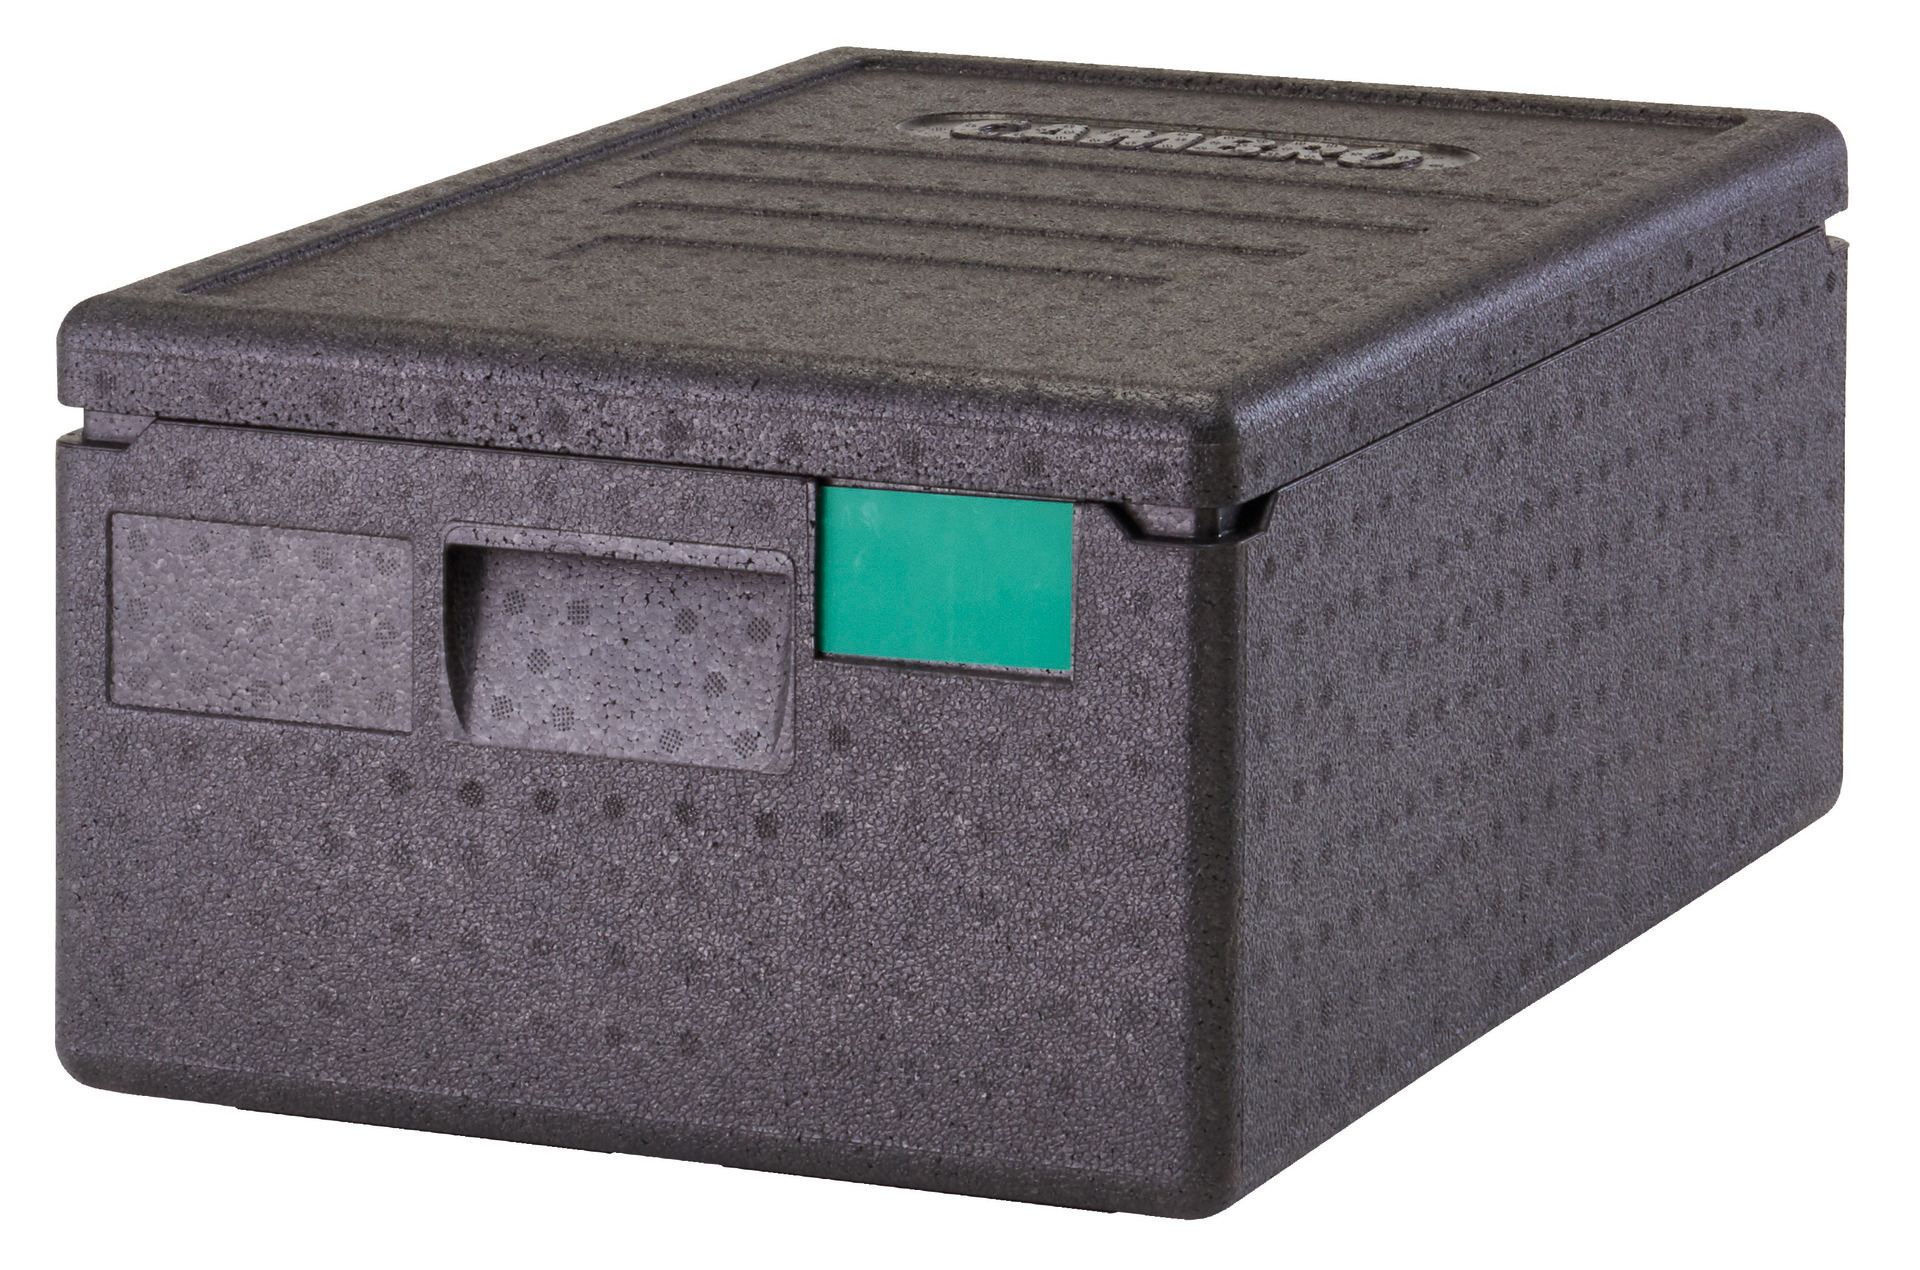 Cam GoBox EPP 35,50 l / für GN 1/1 - 150 mm / schwarz